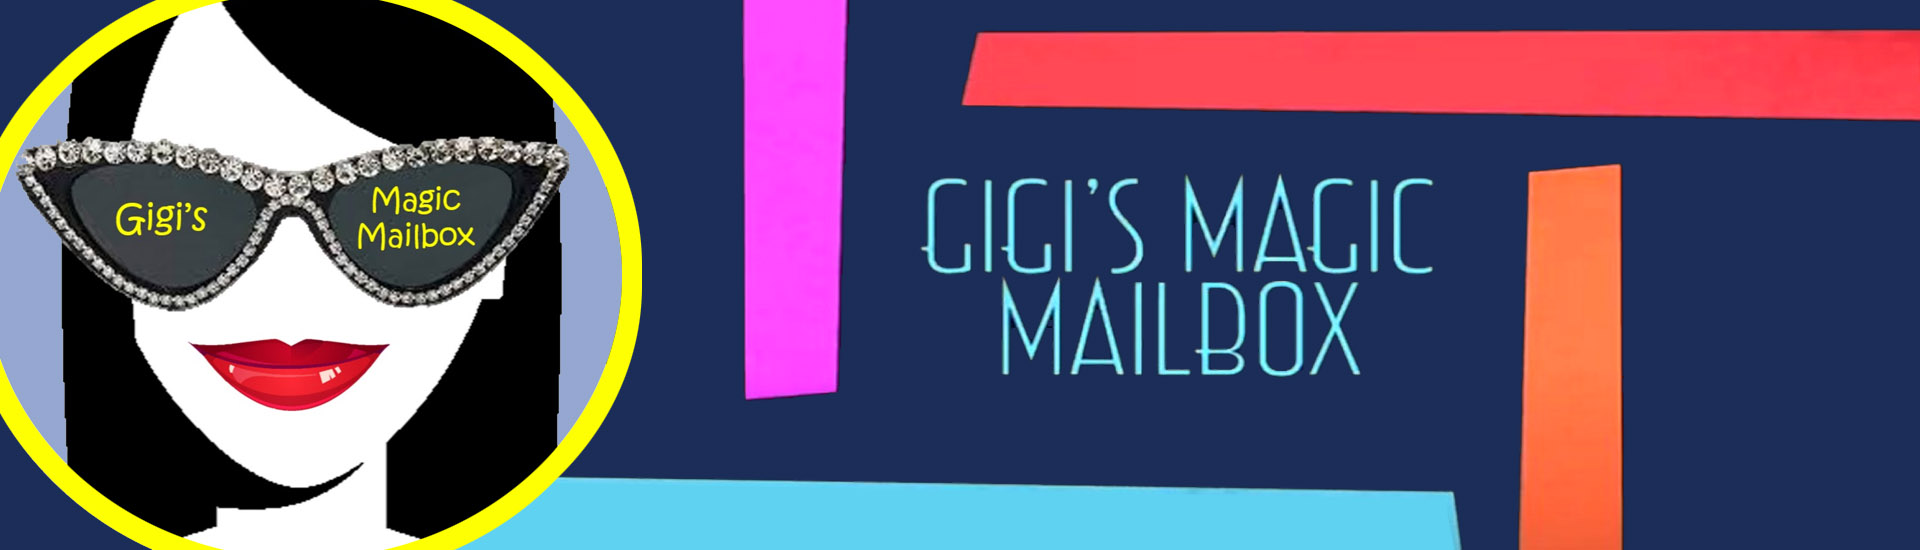 Image for Gigi's Magic Mailbox